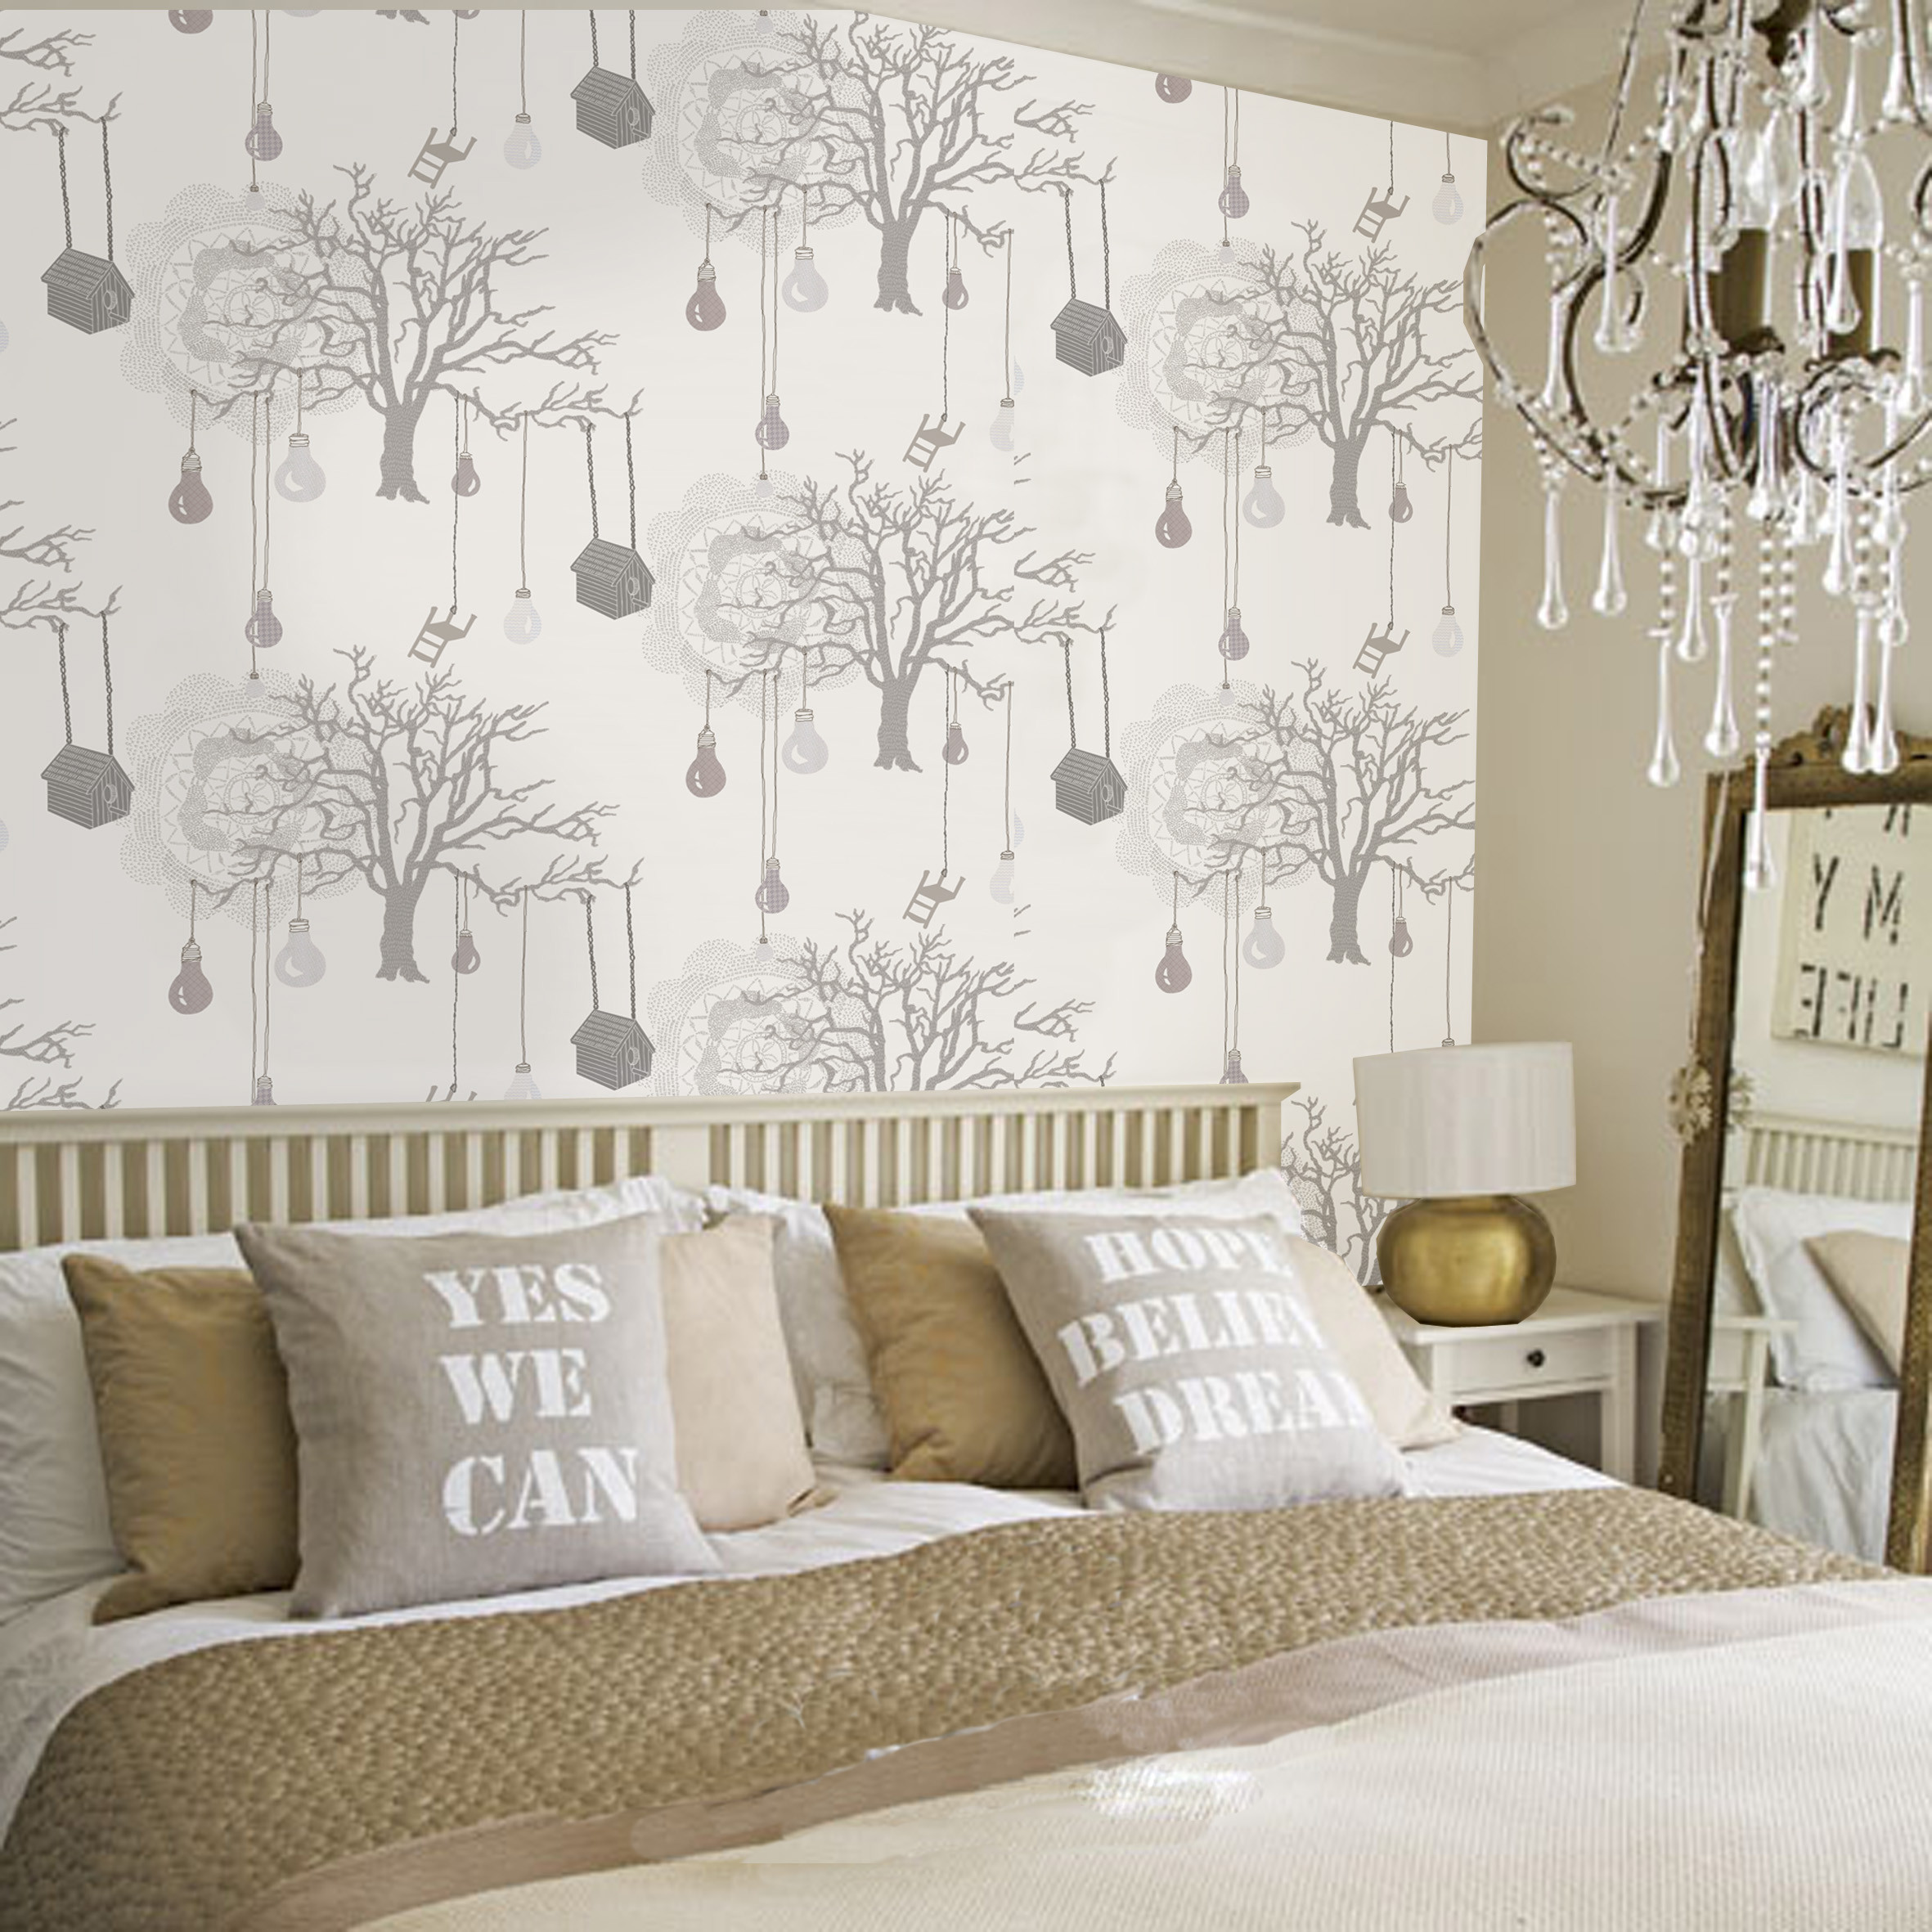 Wallpapers For Bedroom Wall
 30 Best Diy Wallpaper Designs for Bedrooms UK 2015